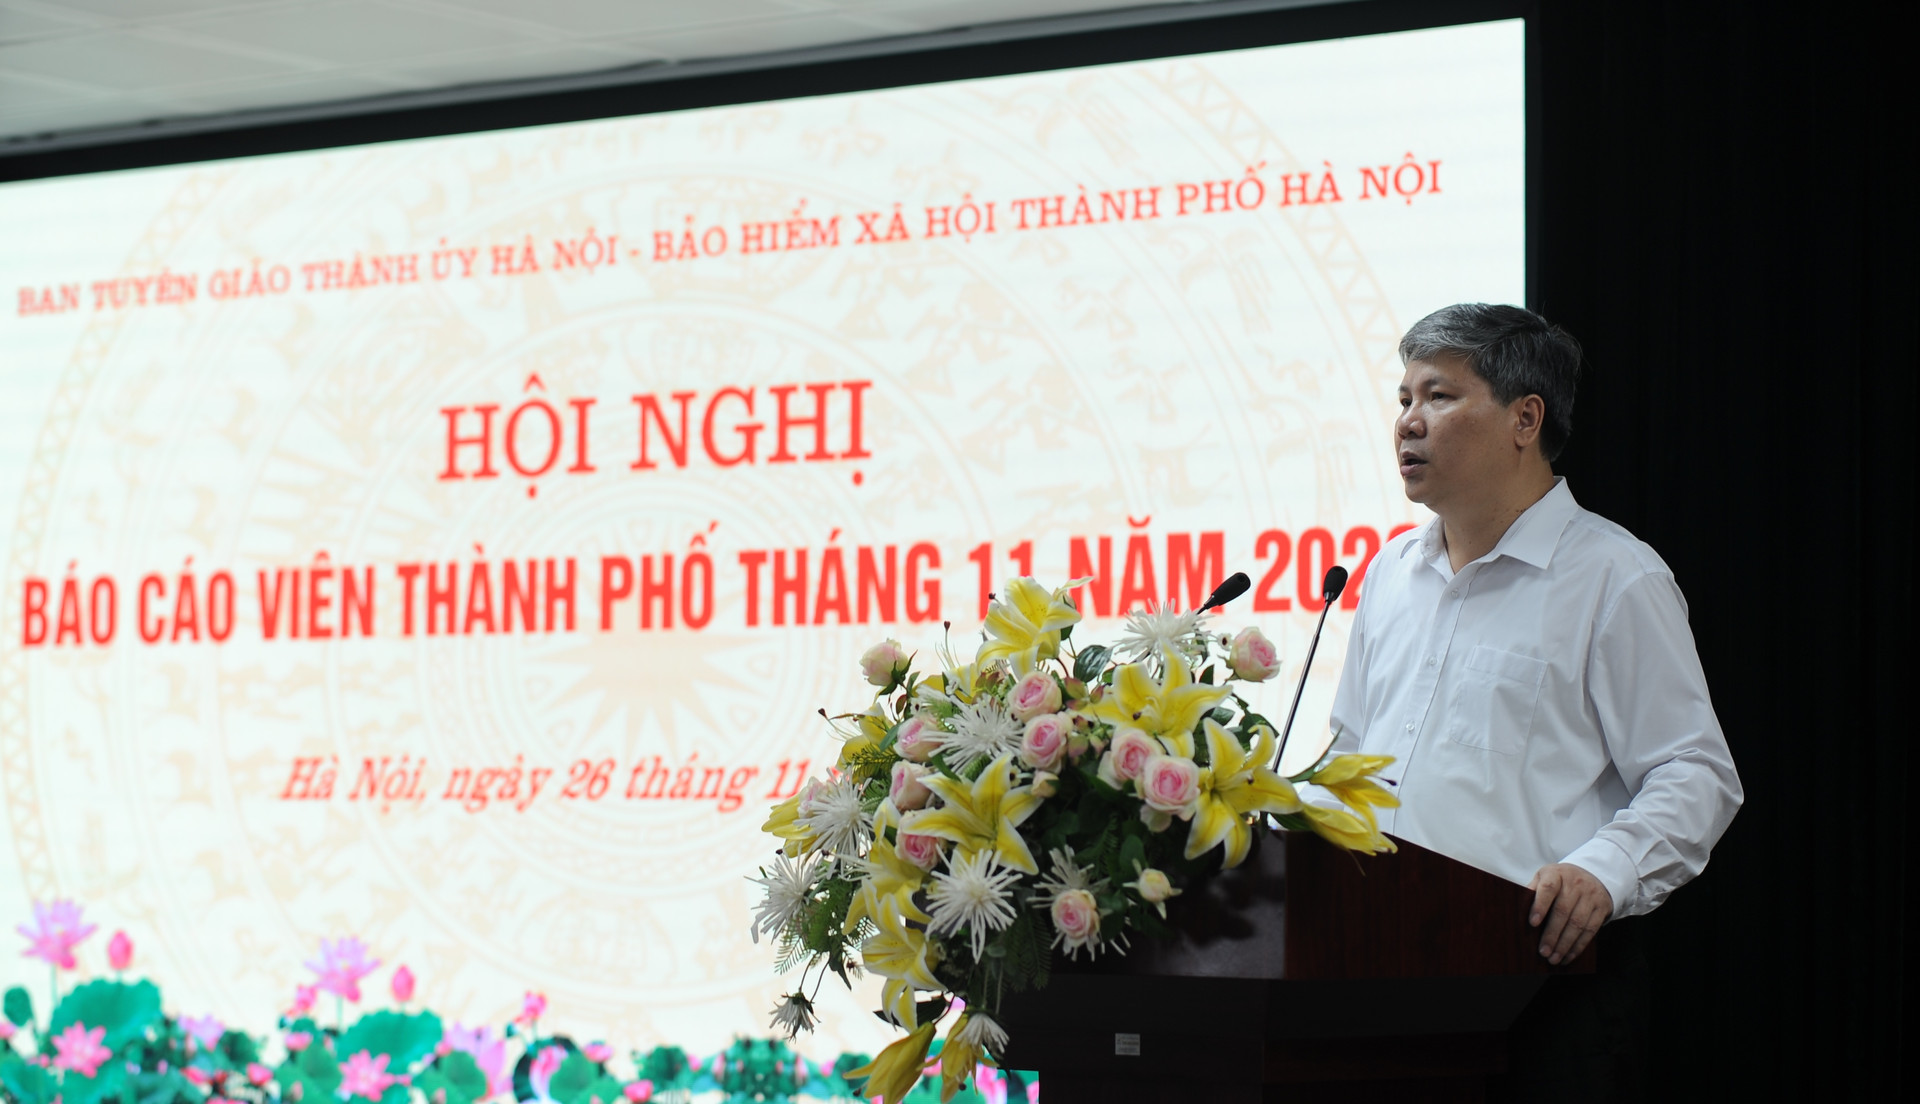 Hà Nội: Hội nghị Báo cáo viên Thành phố tháng 11 năm 2020